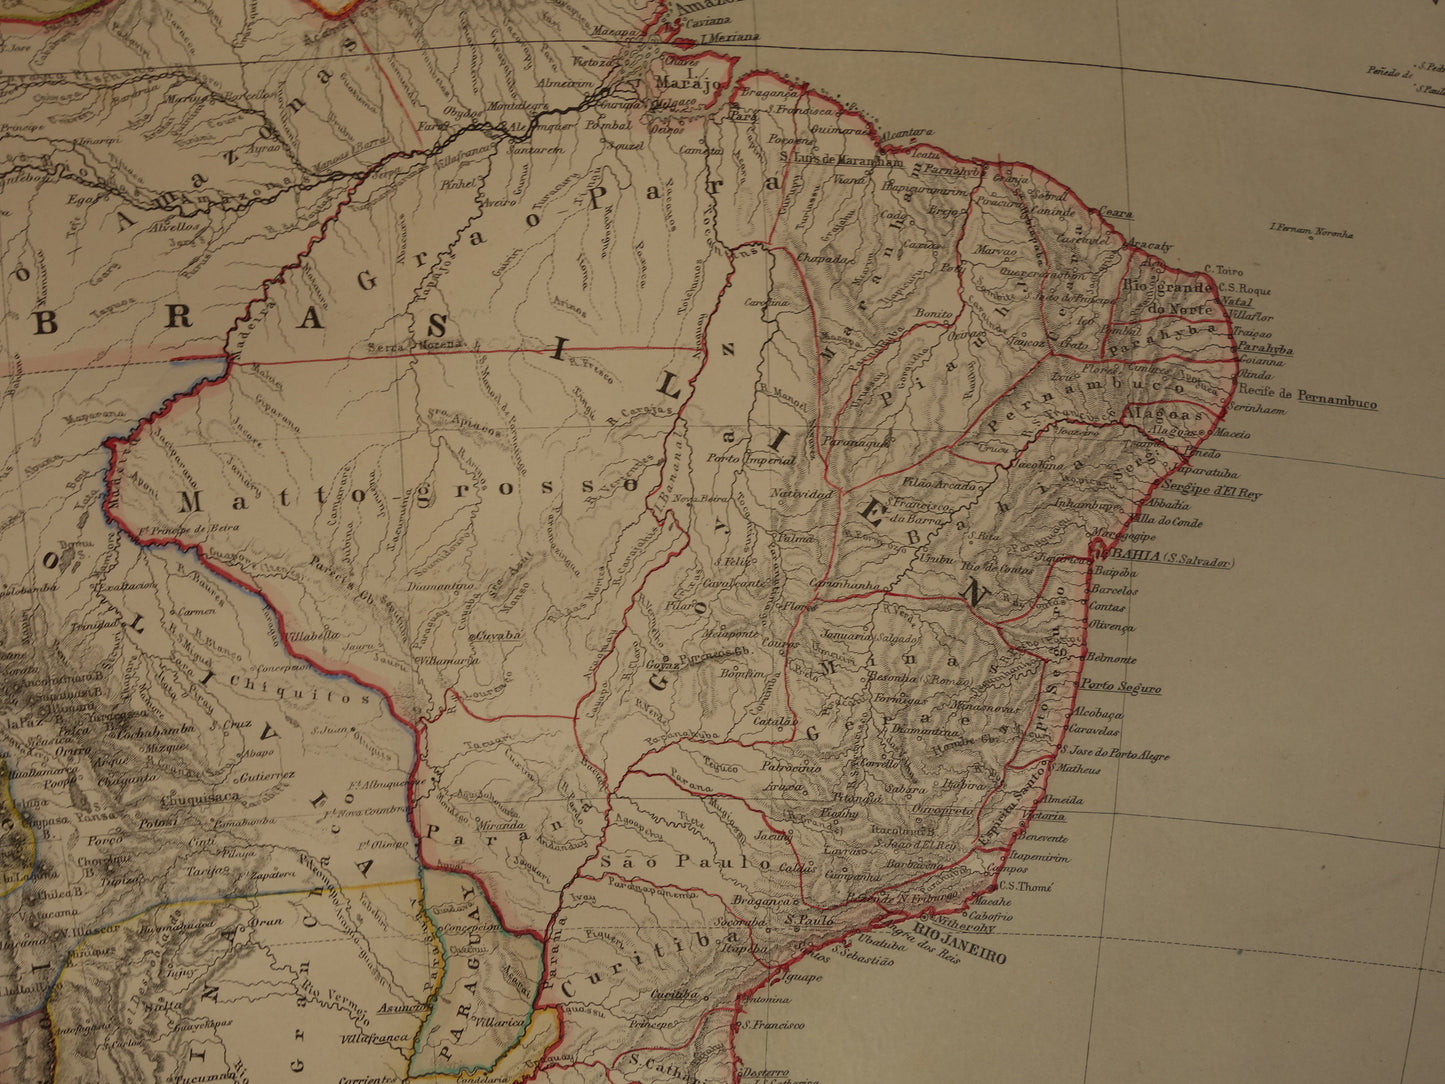 ZUID-AMERIKA Grote oude kaart van Zuid-Amerika uit 1860 originele antieke landkaart Patagonië Brazilië Argentinië Suriname vintage poster